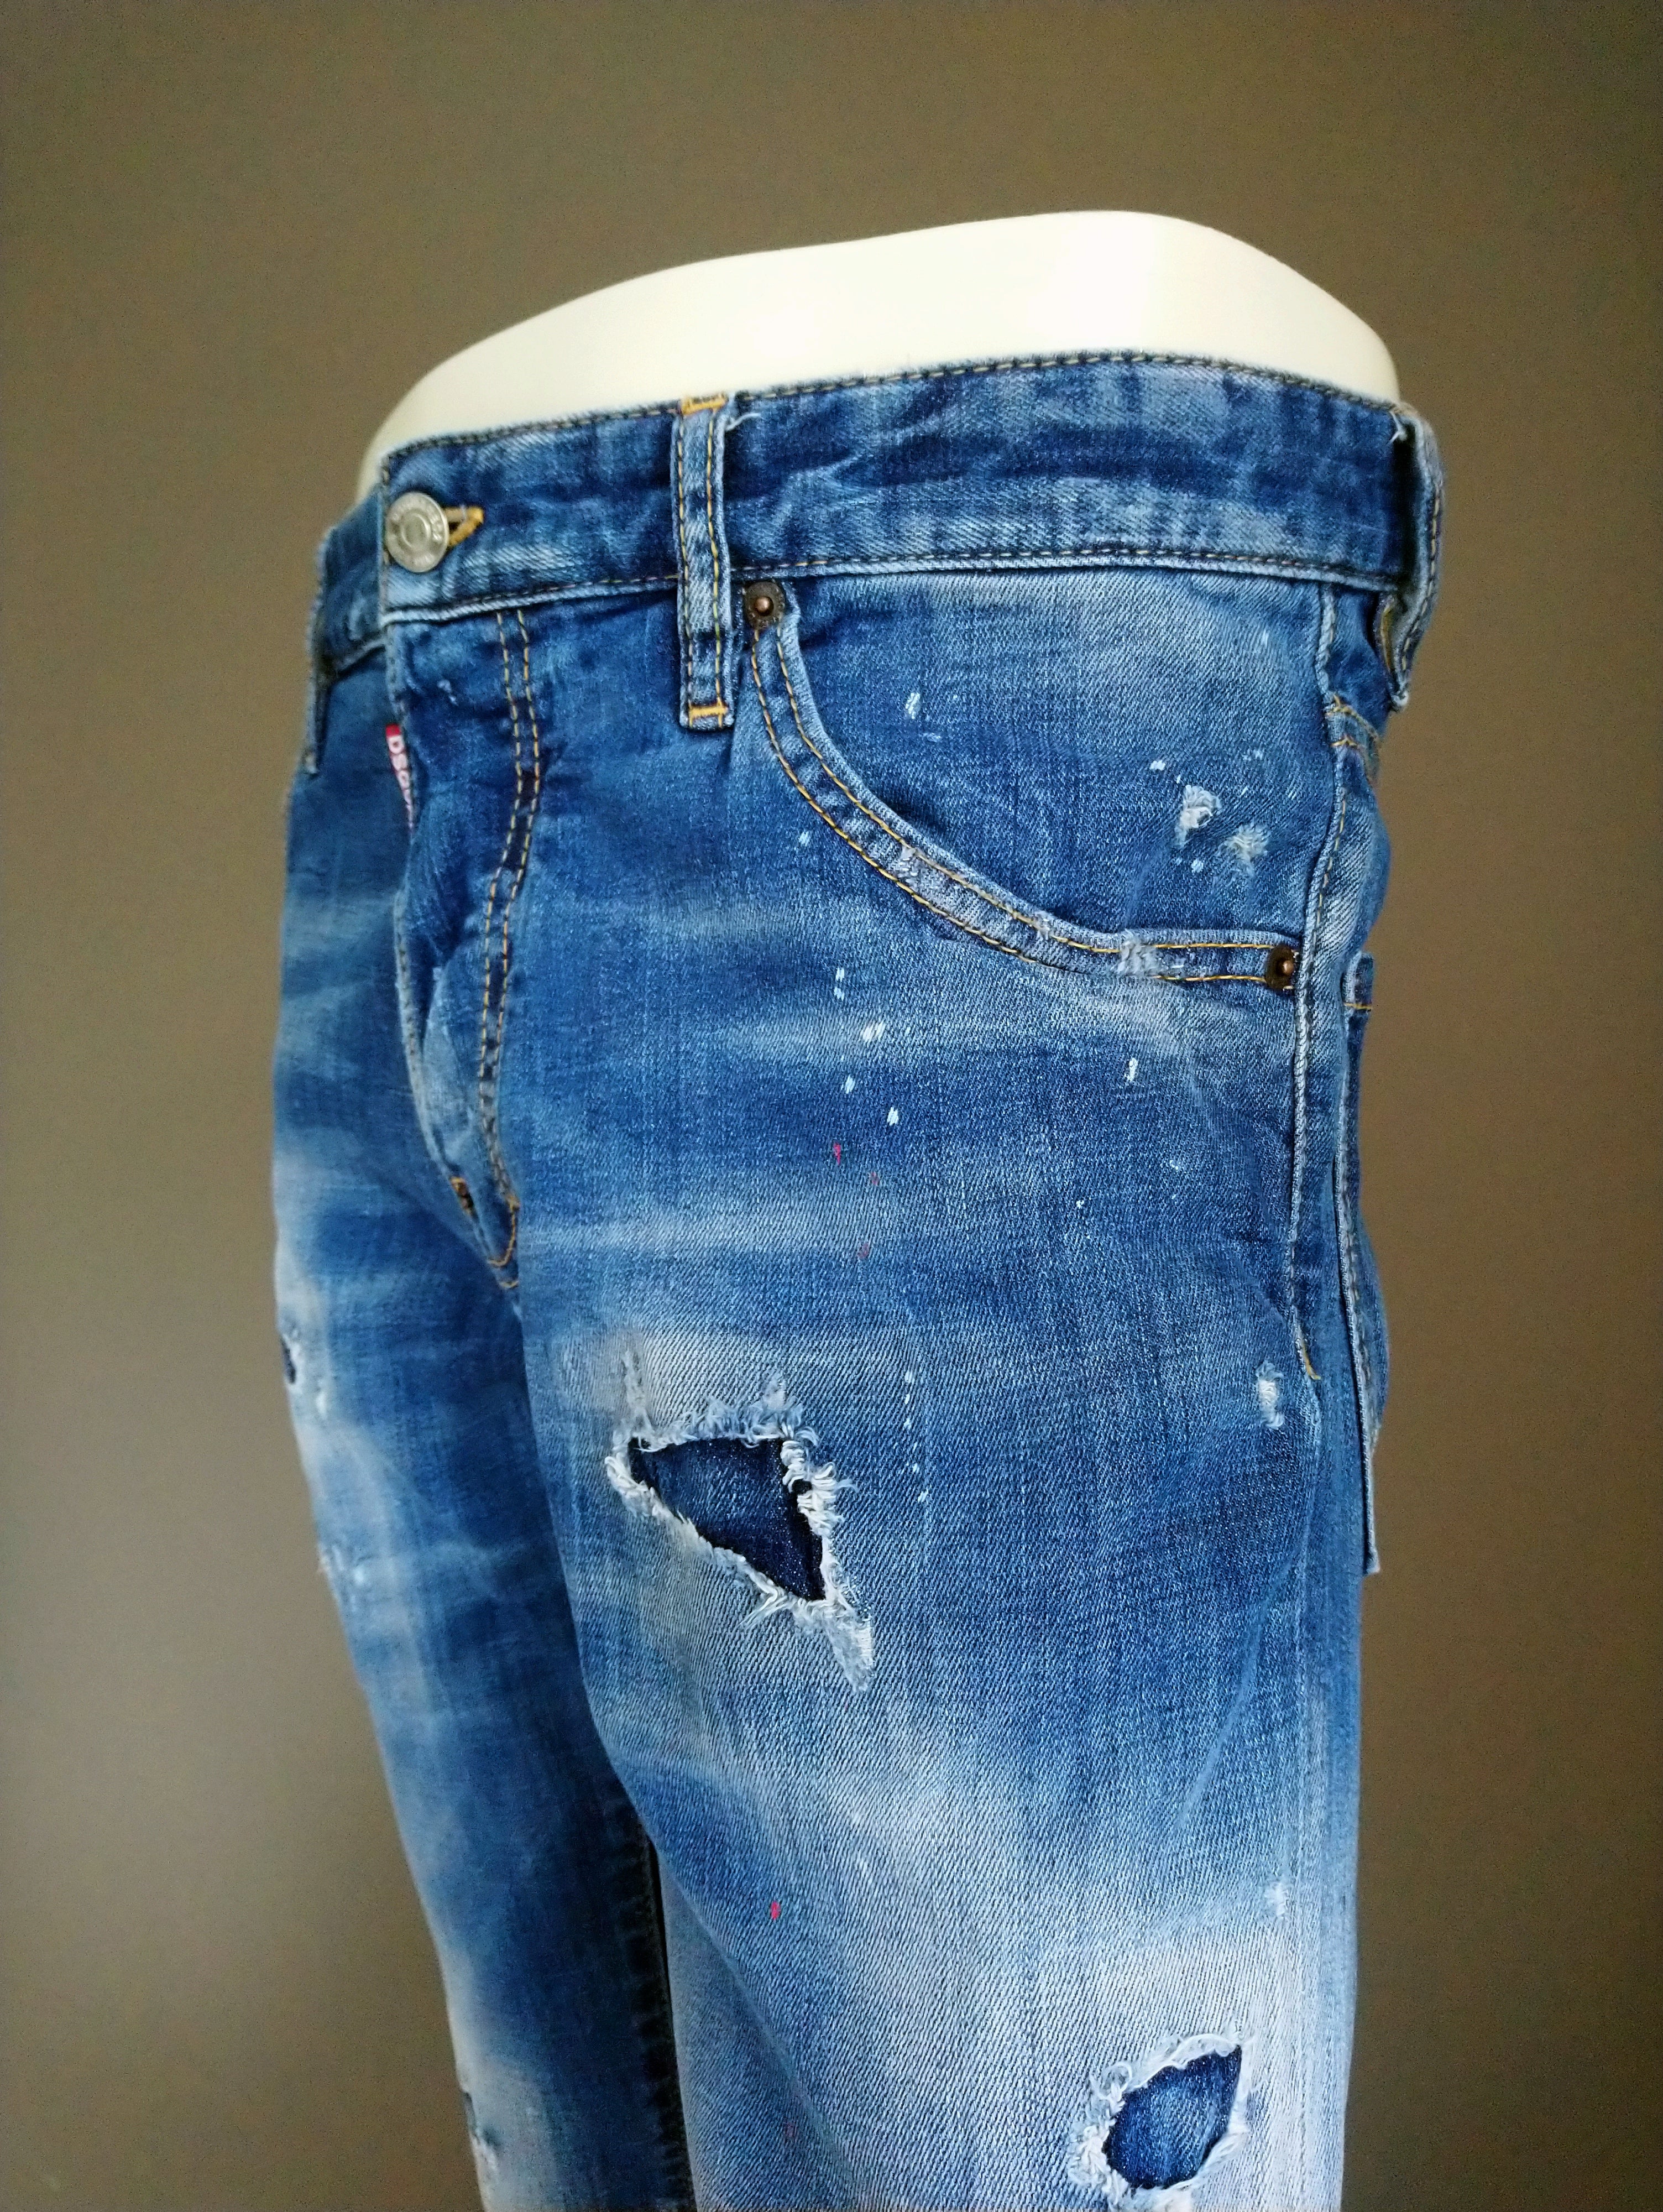 DSquared2 jeans. Blauw gekleurd. W32 - L30. EcoGents